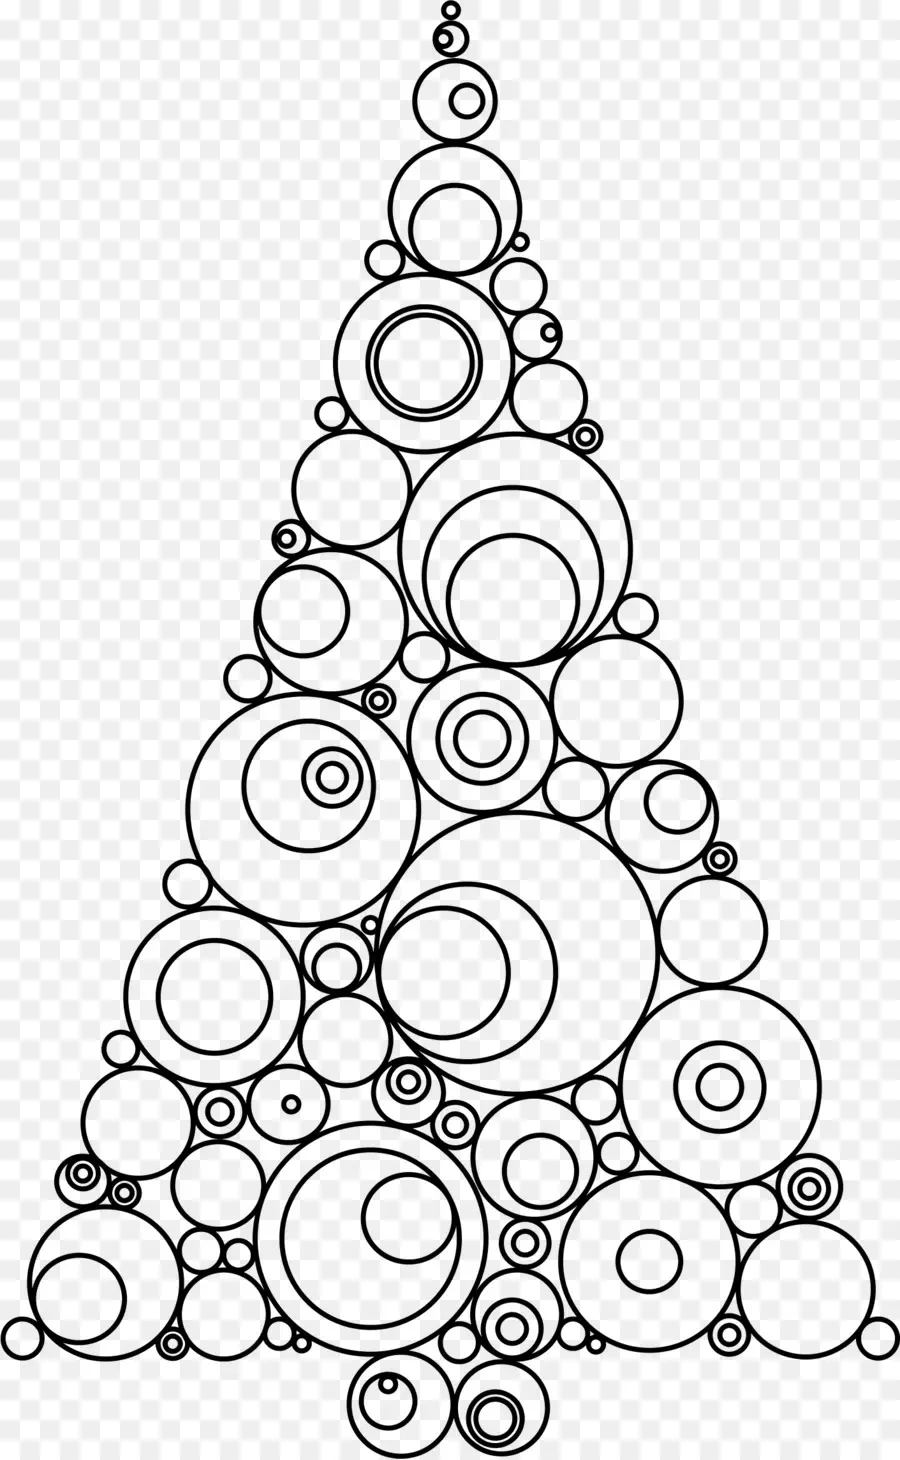 La Navidad，árbol De Navidad PNG